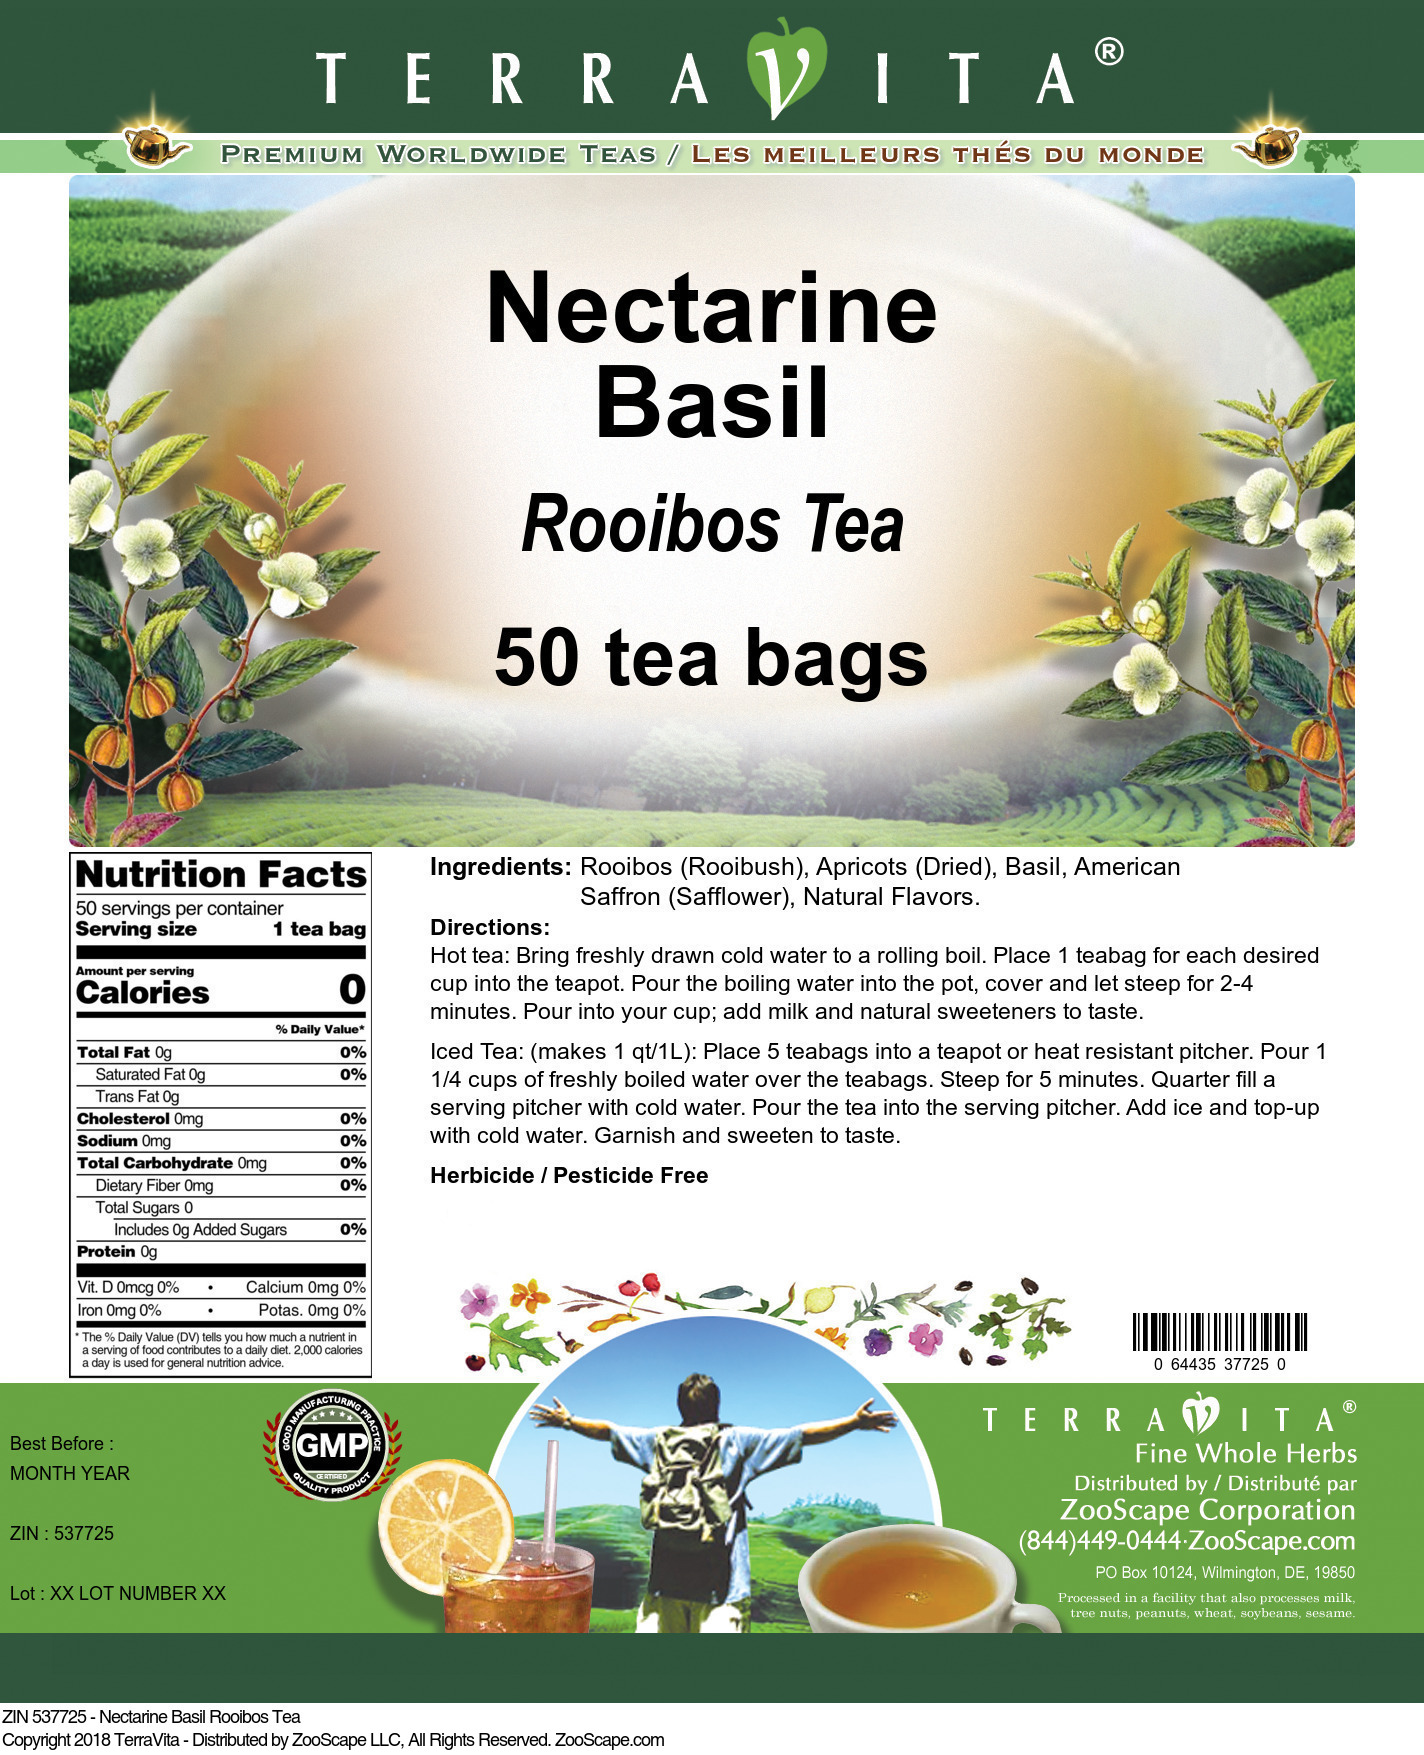 Nectarine Basil Rooibos Tea - Label